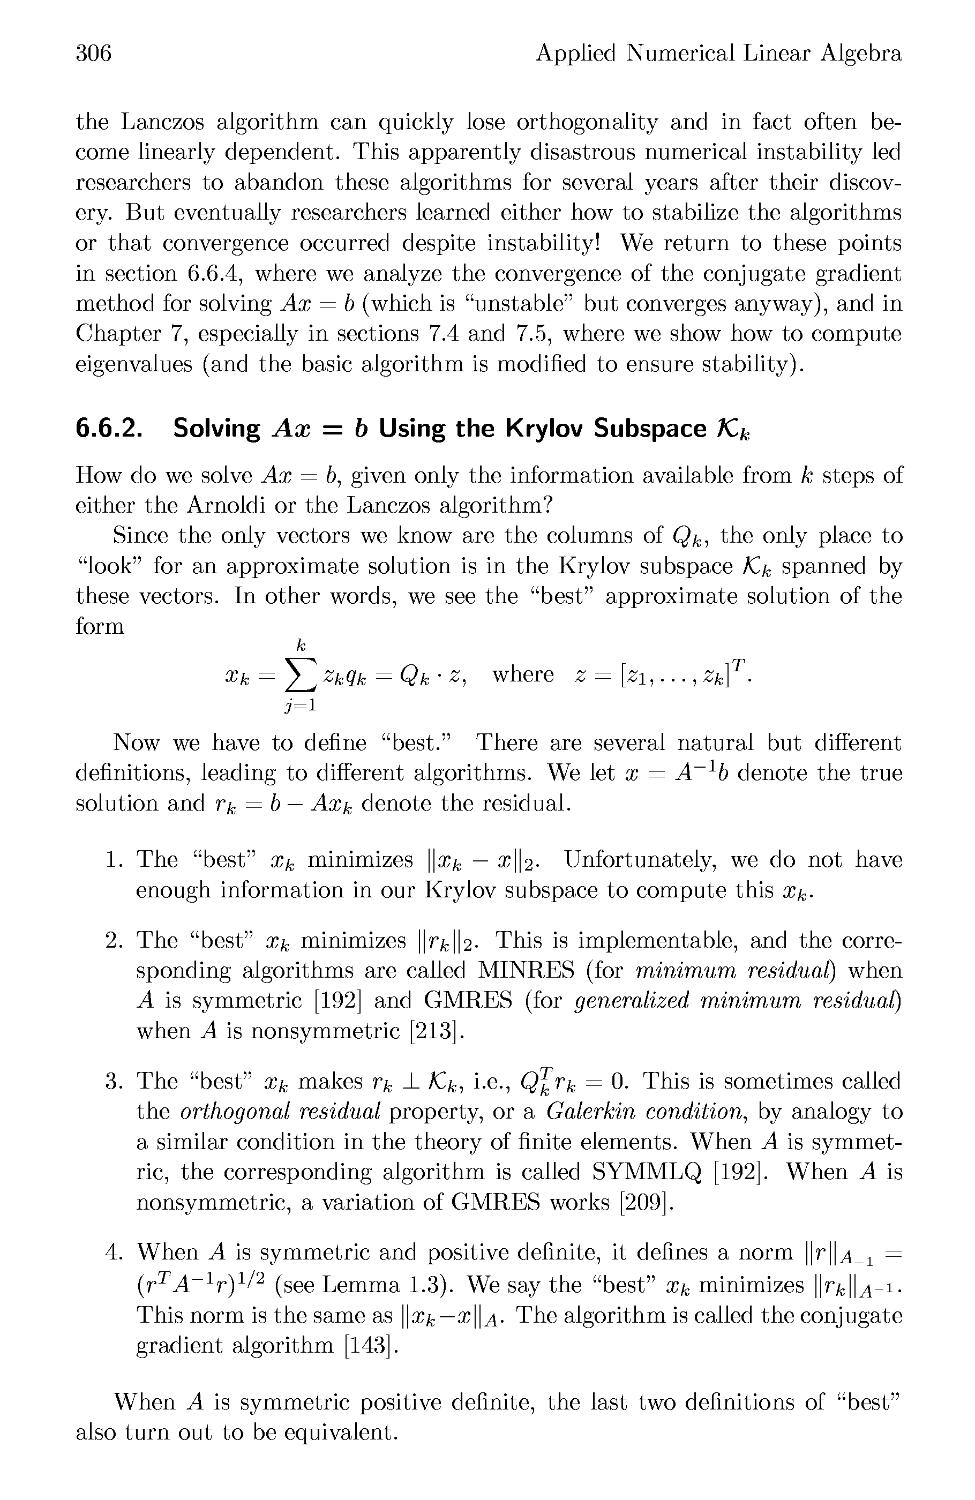 6.6.2 Solving Ax = b Using the Krylov Subspace 7C&